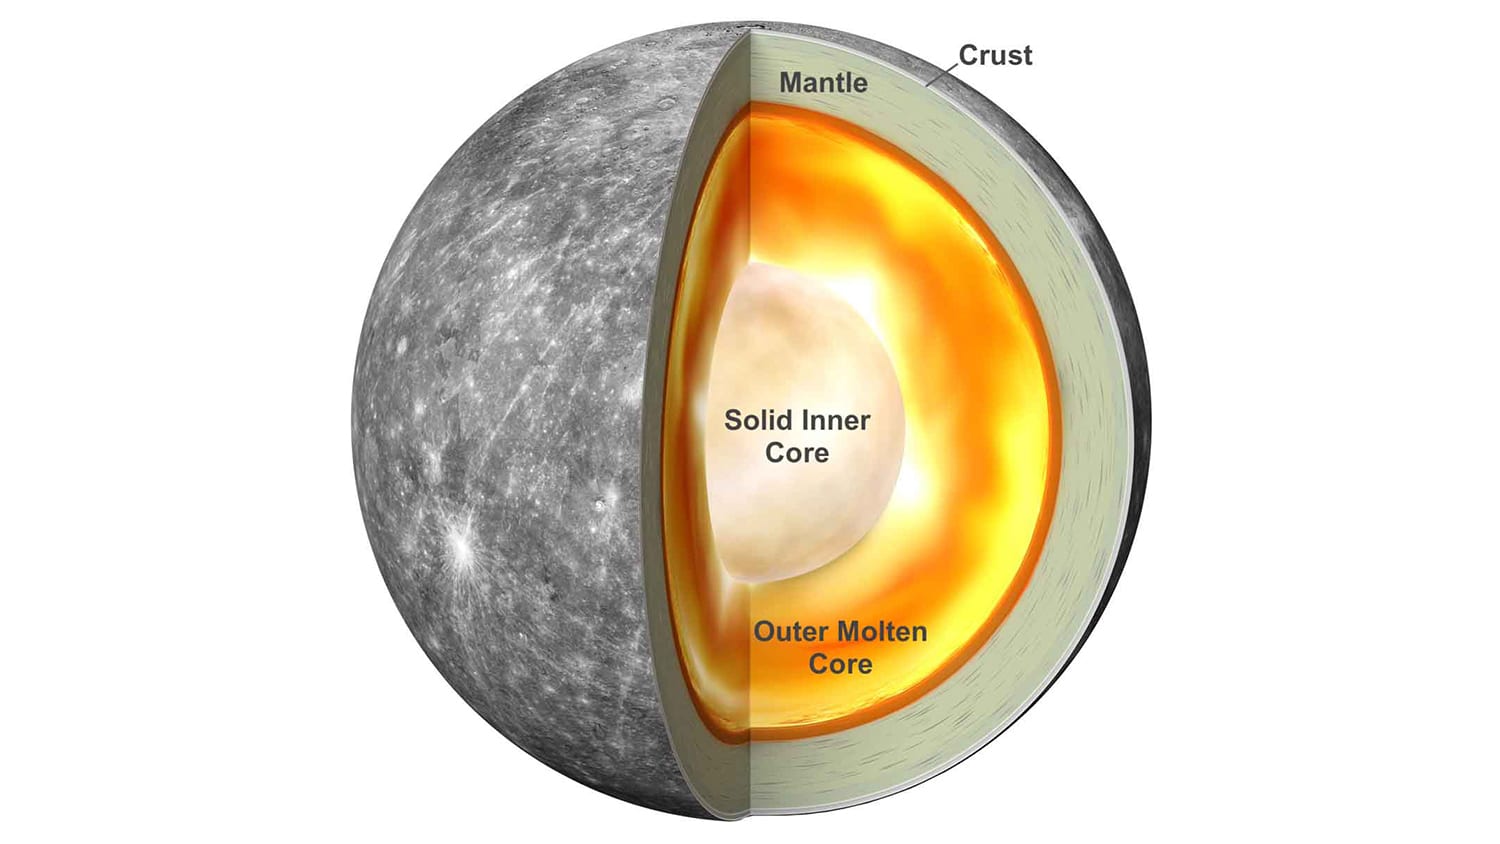 Mercury's core